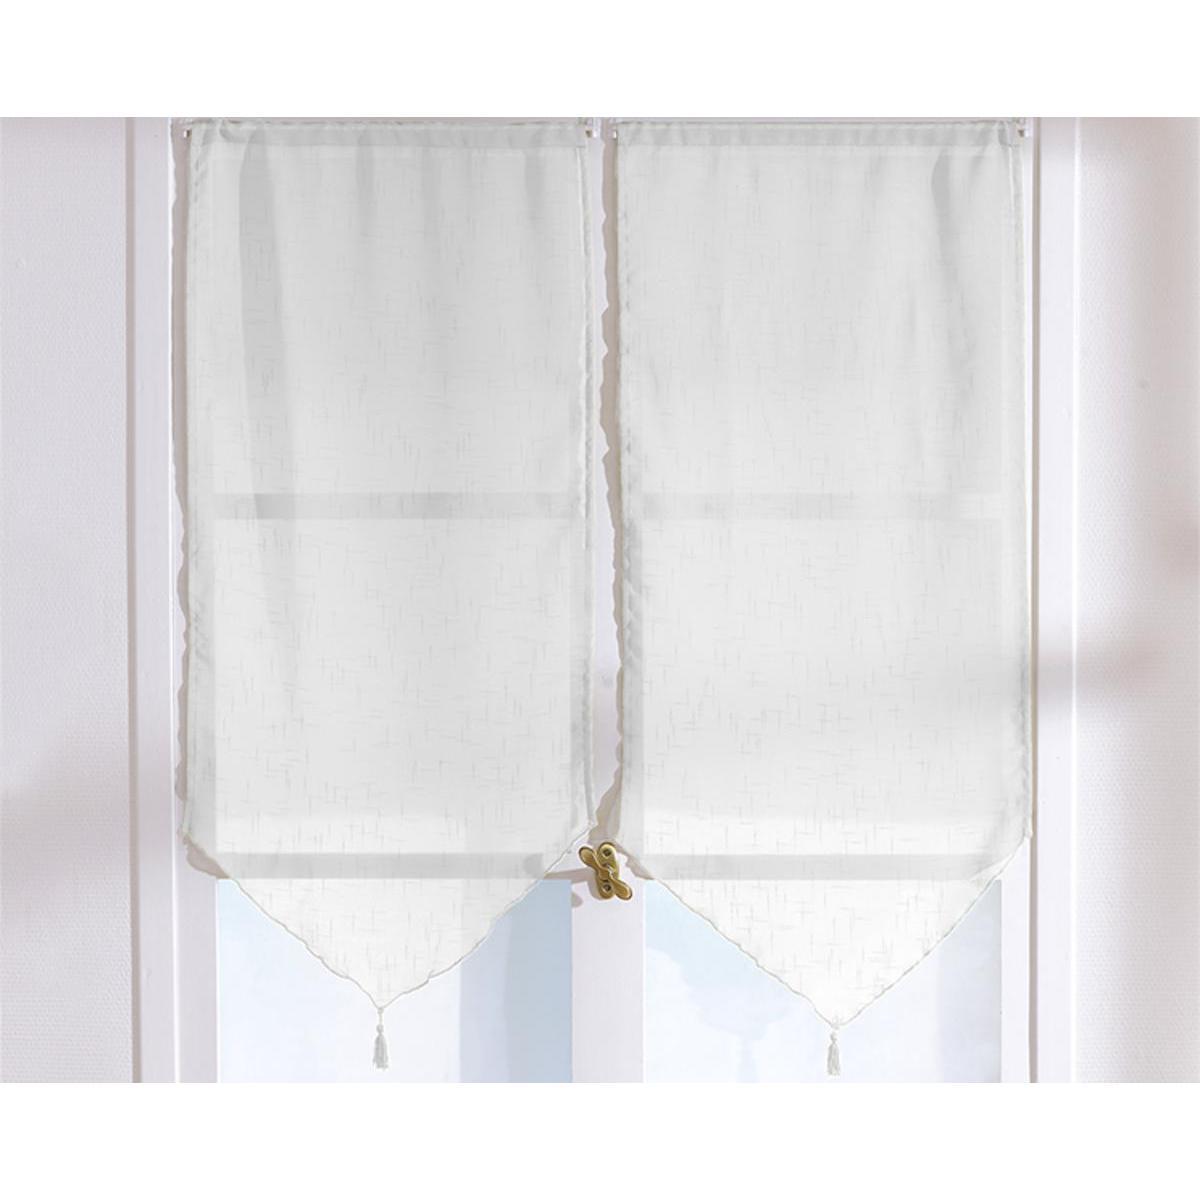 Paire de vitrages - 100% polyester - 60 x 120 cm - Blanc